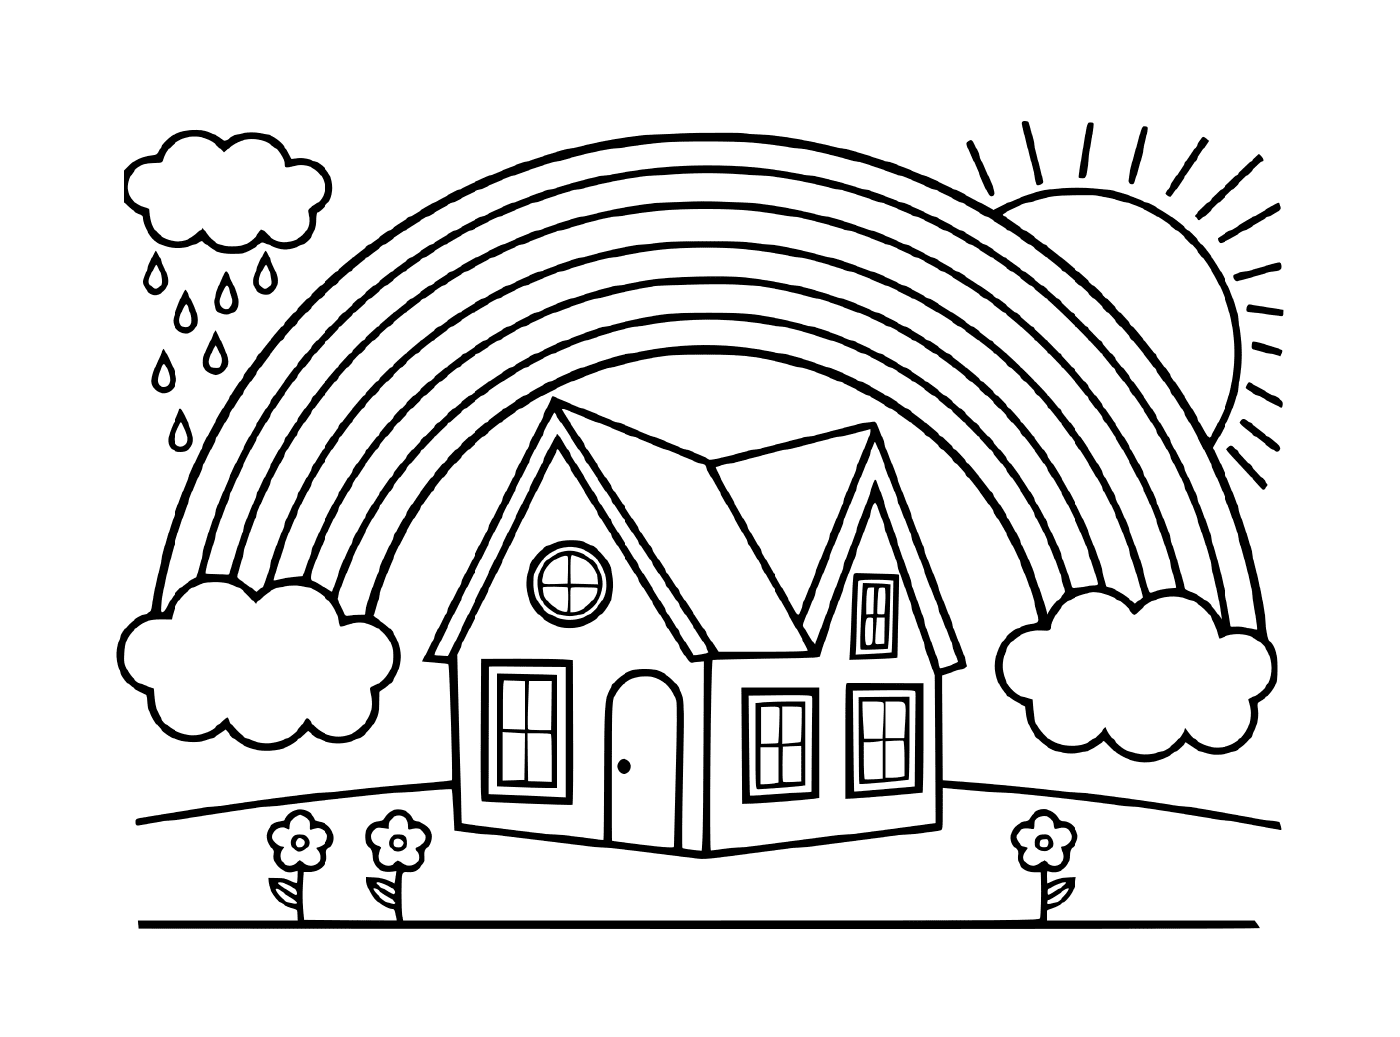   Une maison sous un arc-en-ciel 